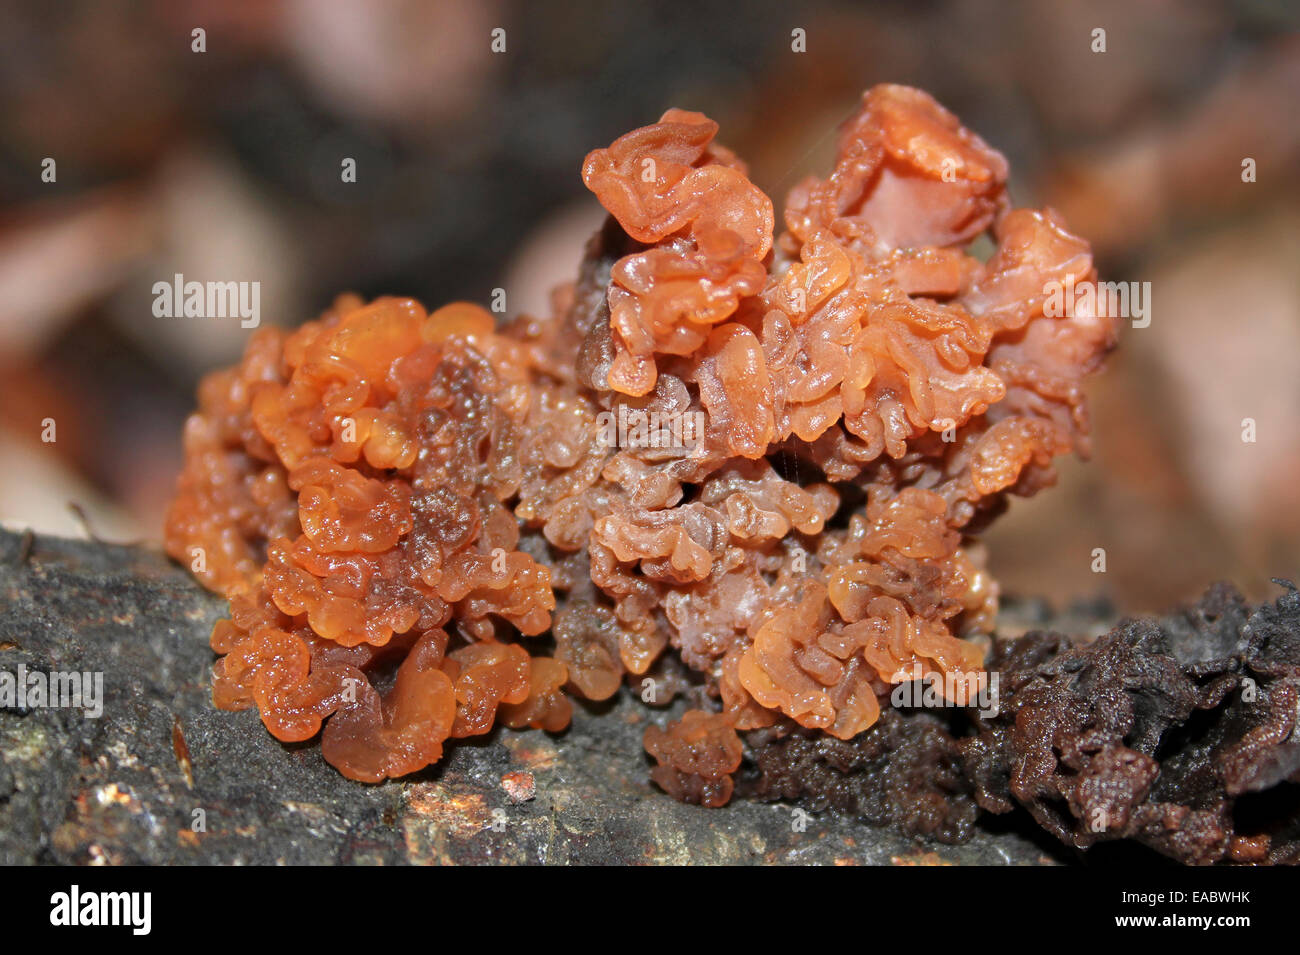 Cervello frondoso Tremella foliacea Foto Stock